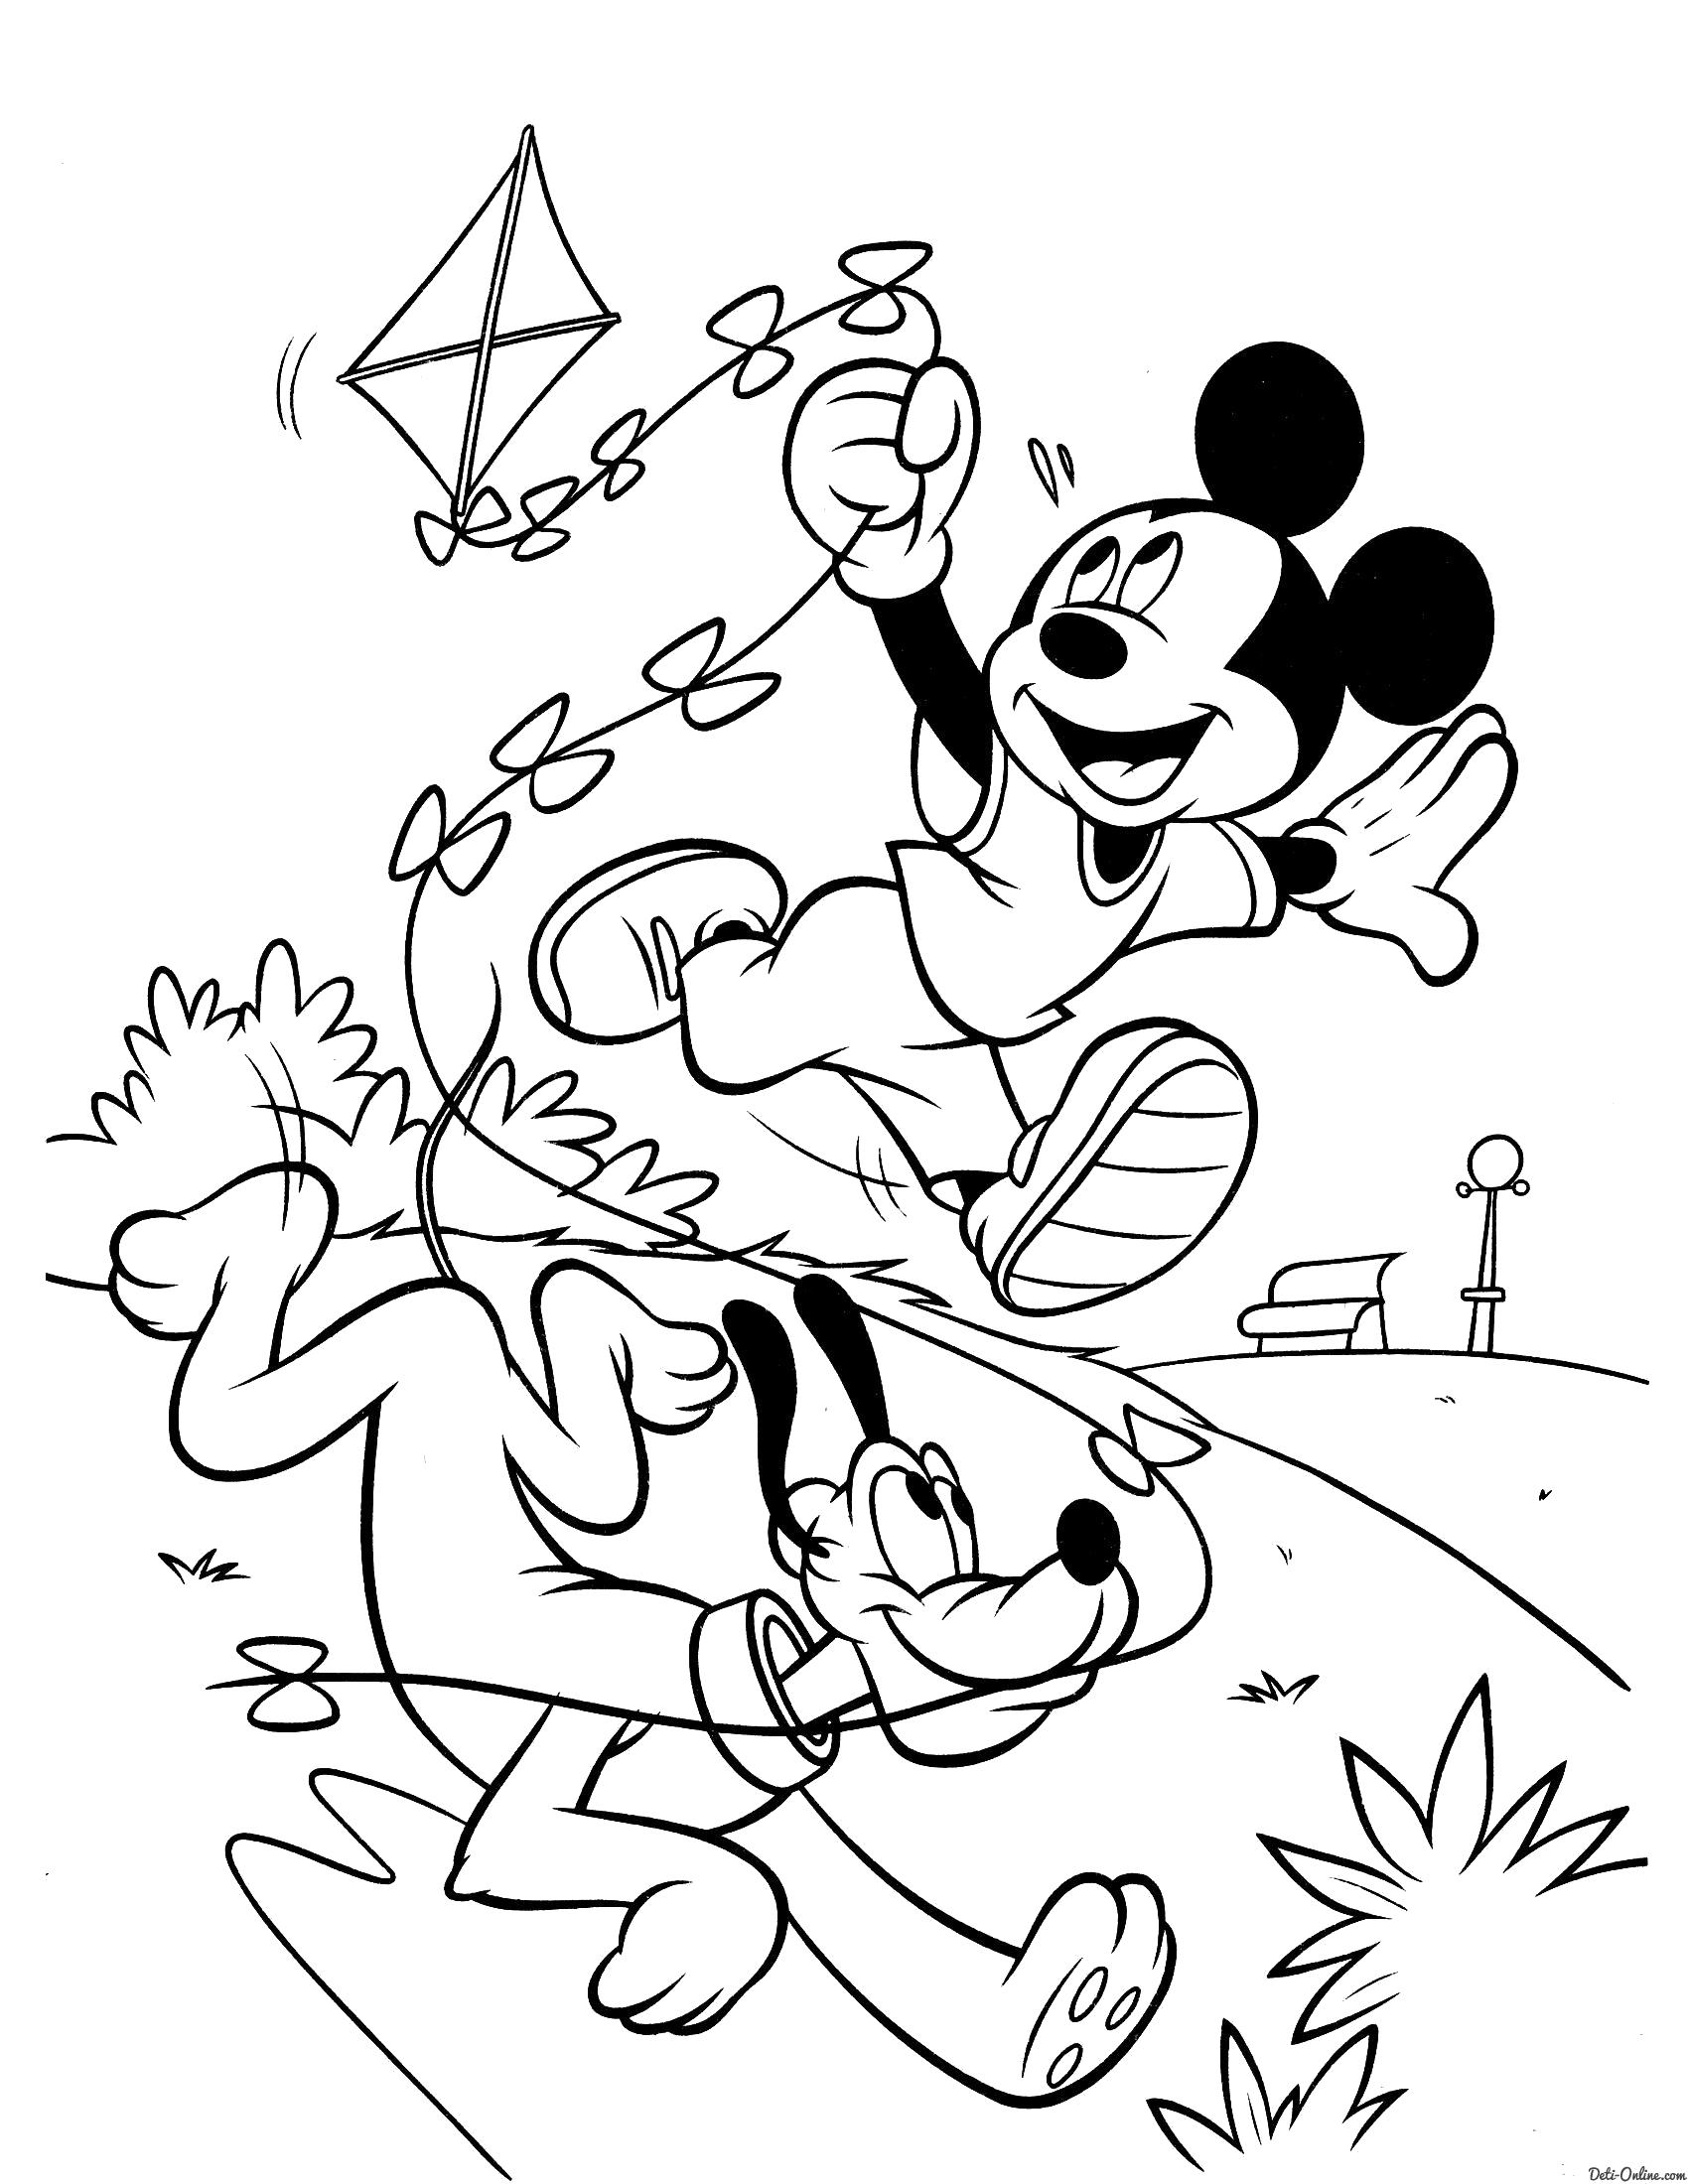 Название: Раскраска Раскраска Микки Маус и Плуто играют. Категория: Микки маус. Теги: Микки маус.